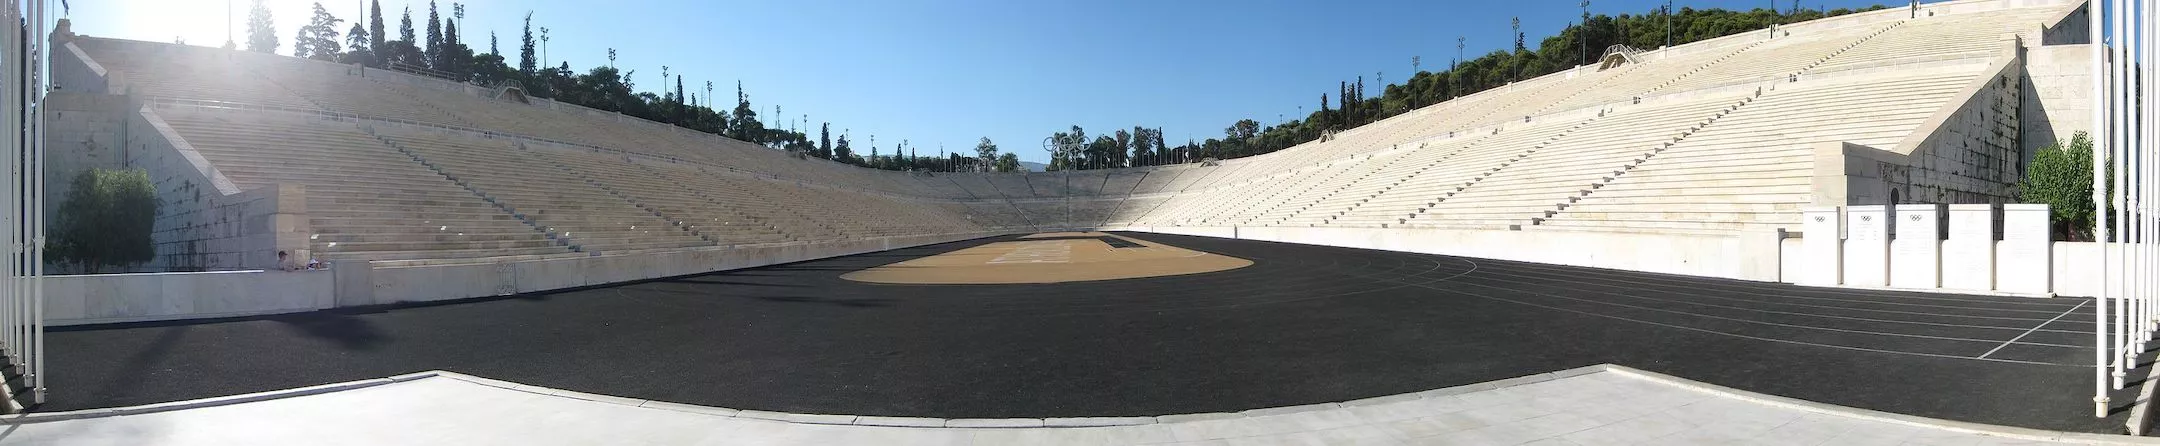 Panathinaiko Stadium panorama